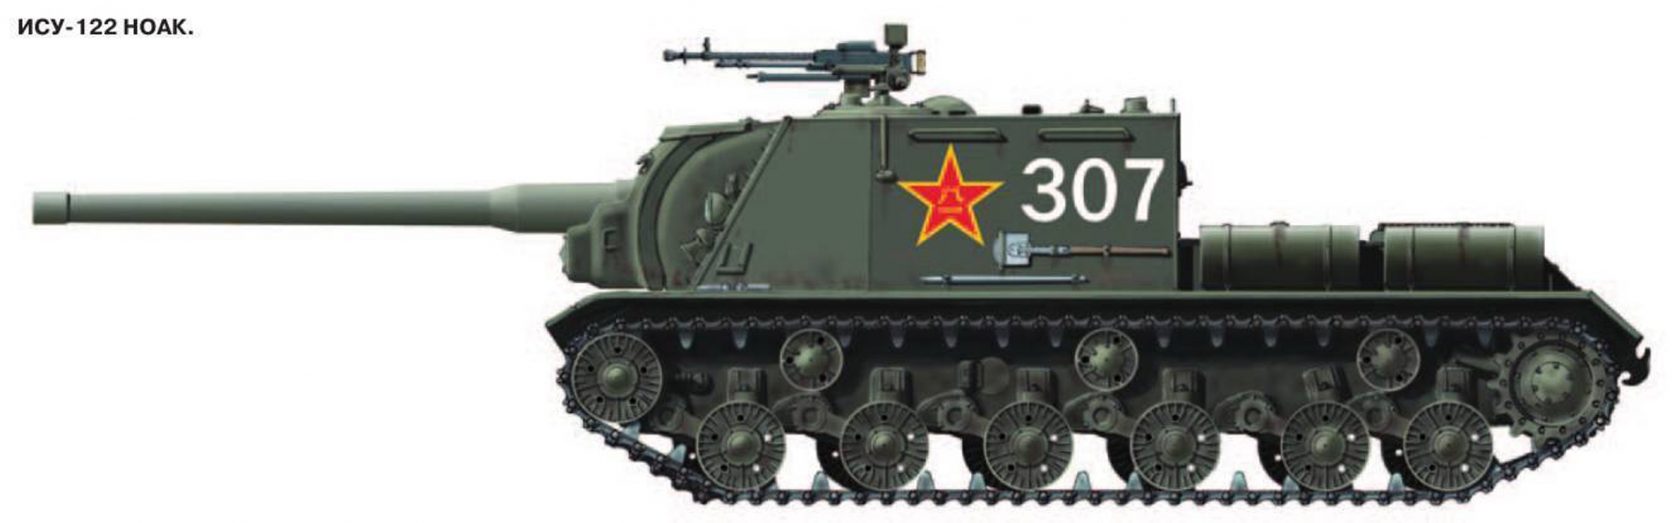 Бок ис. Танк ИСУ 122. Танк ИСУ 152 сбоку. ИСУ-122/152. ИСУ-122 вид сбоку.